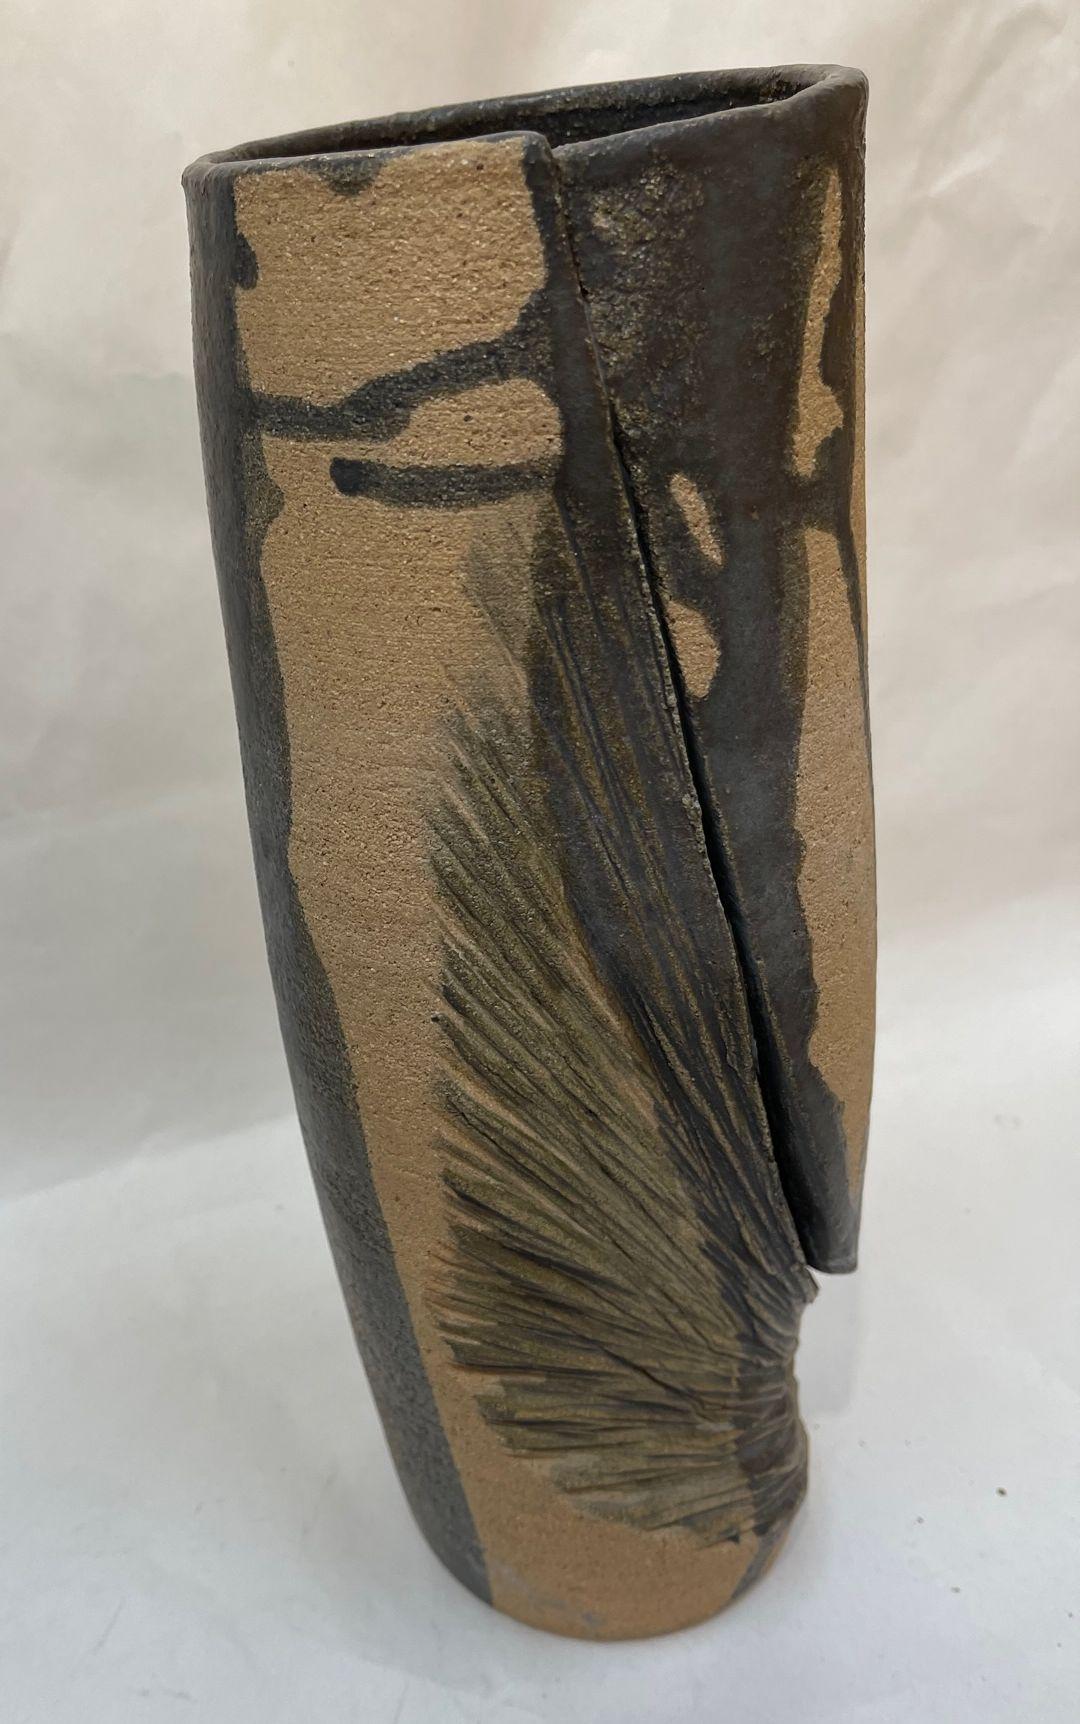 Awesome Modernist hohe Studio Vase mit Matte Greenish grau abstrakte Designs. Wunderschön handgefertigte Vase von einem Töpfermeister. Maße: Ca. 11,5